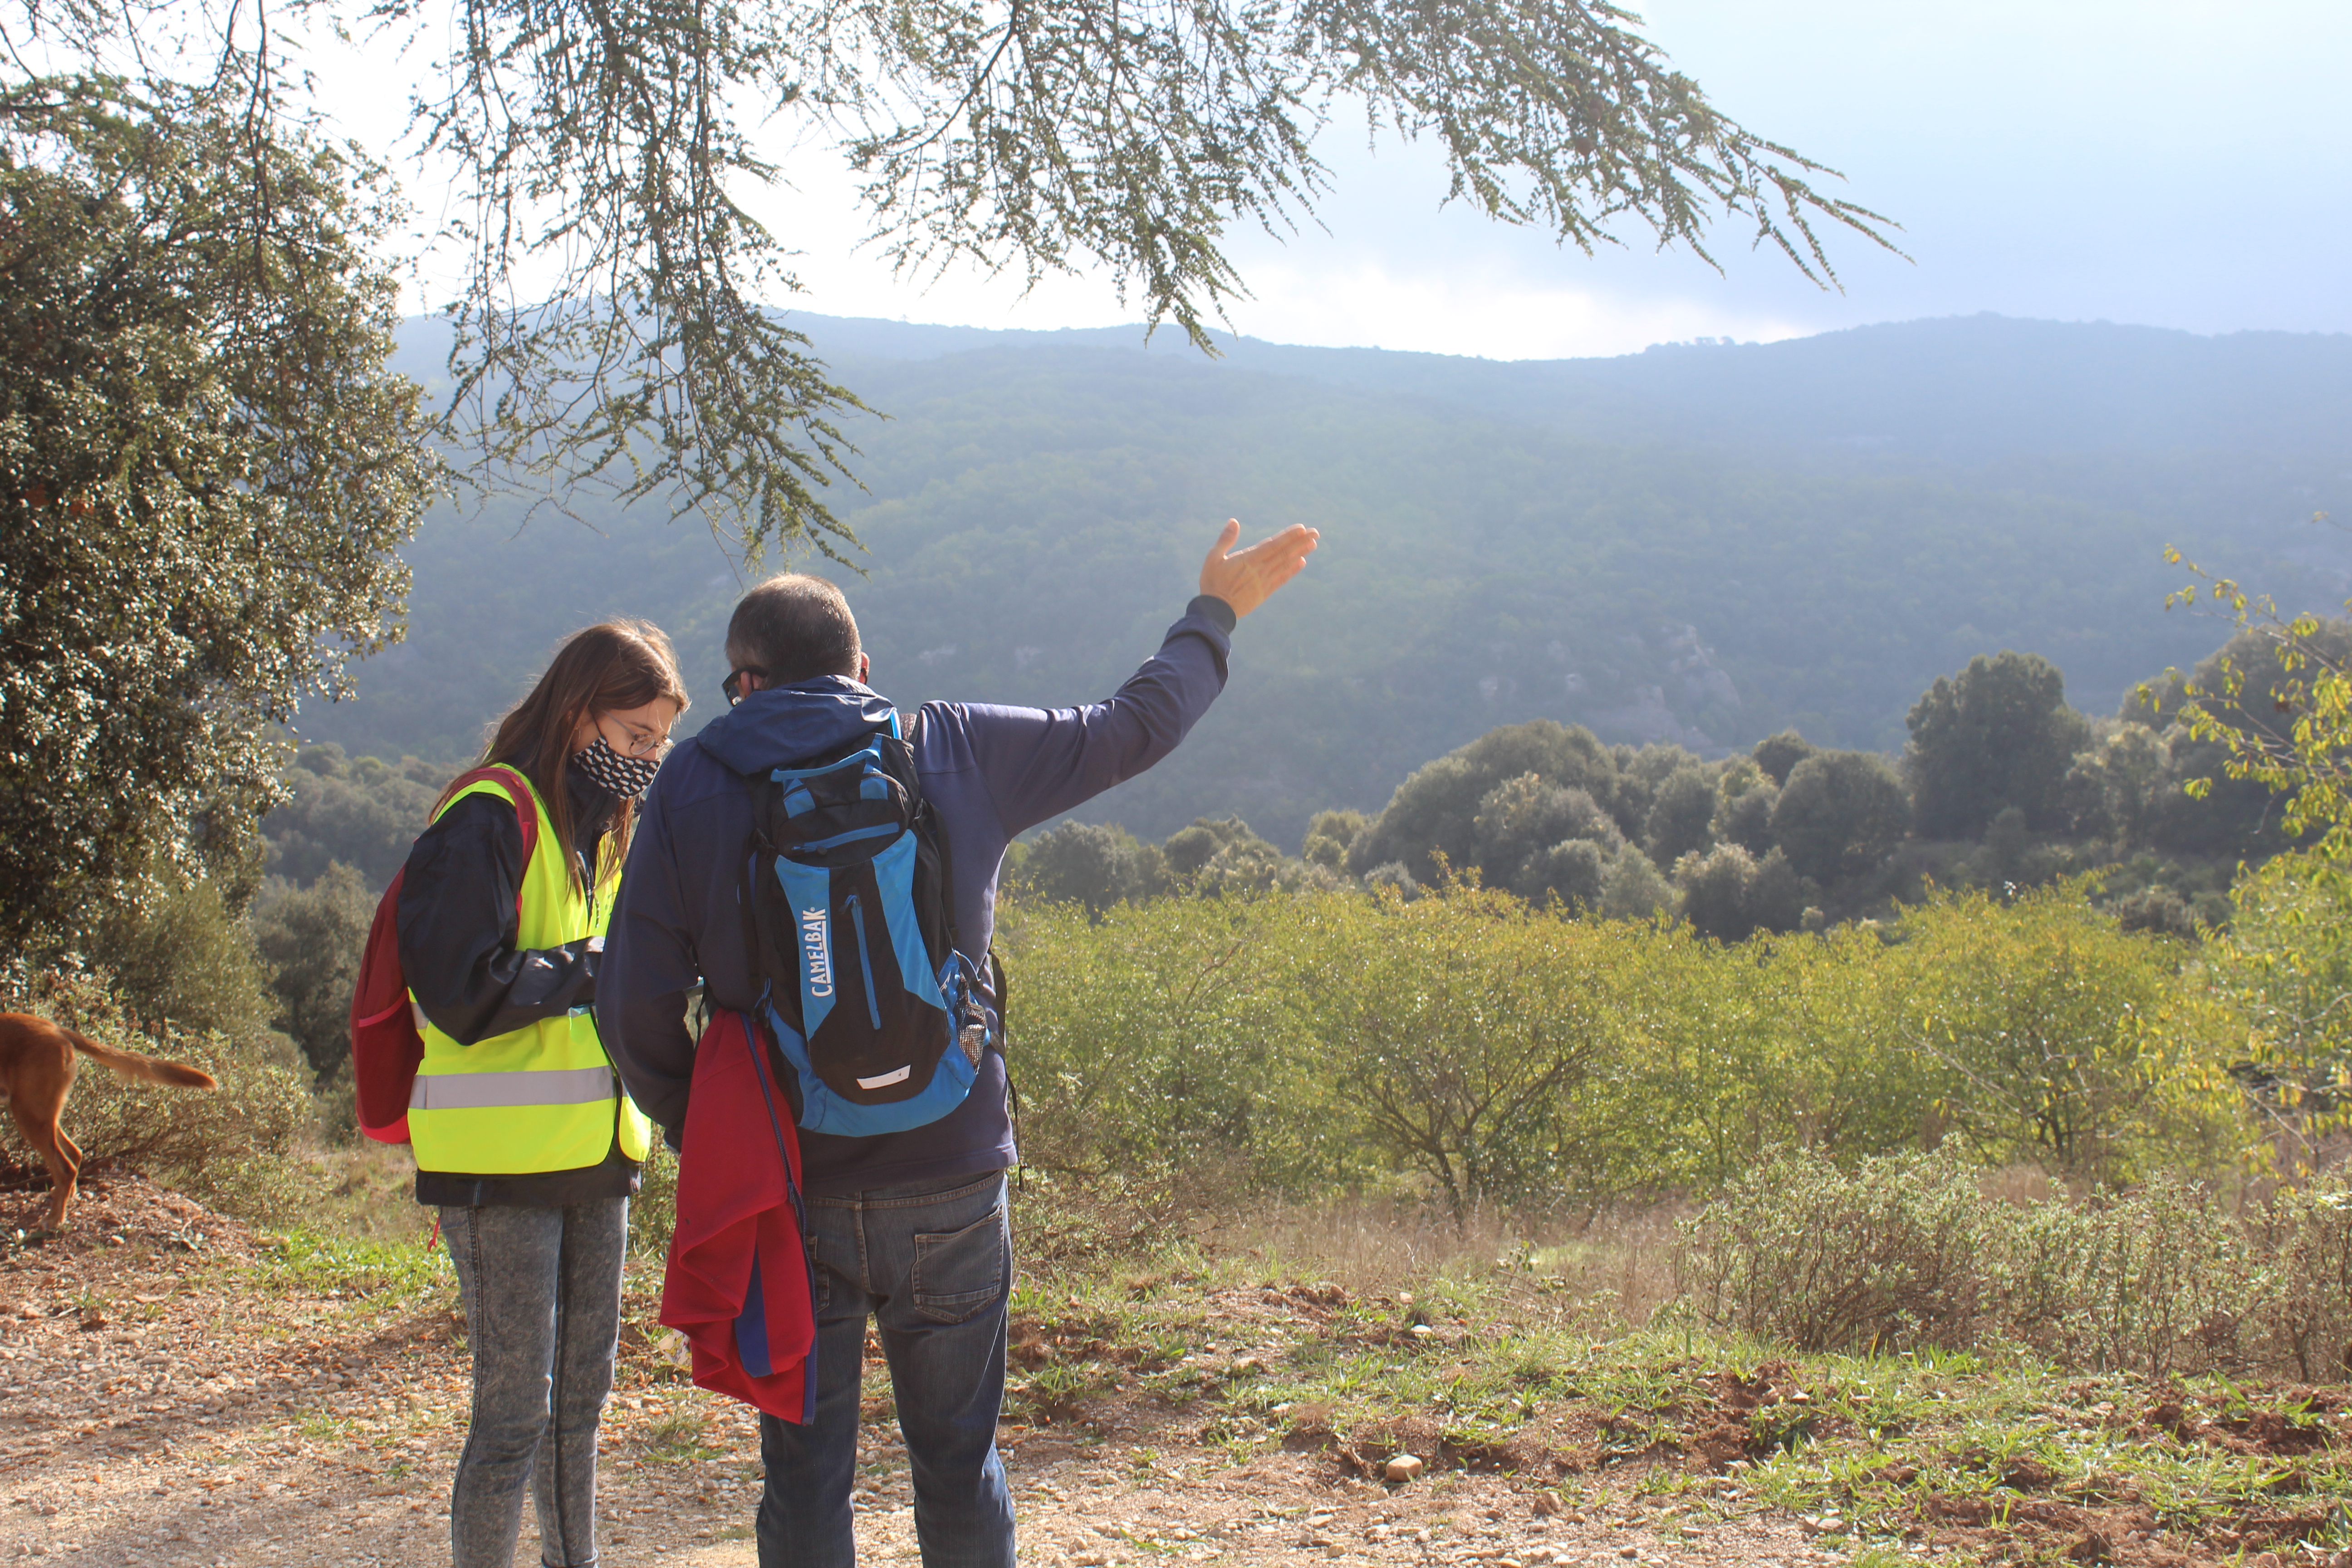 Informació sobre usos i enquestació als visitants al Parc de la Serralada Litoral